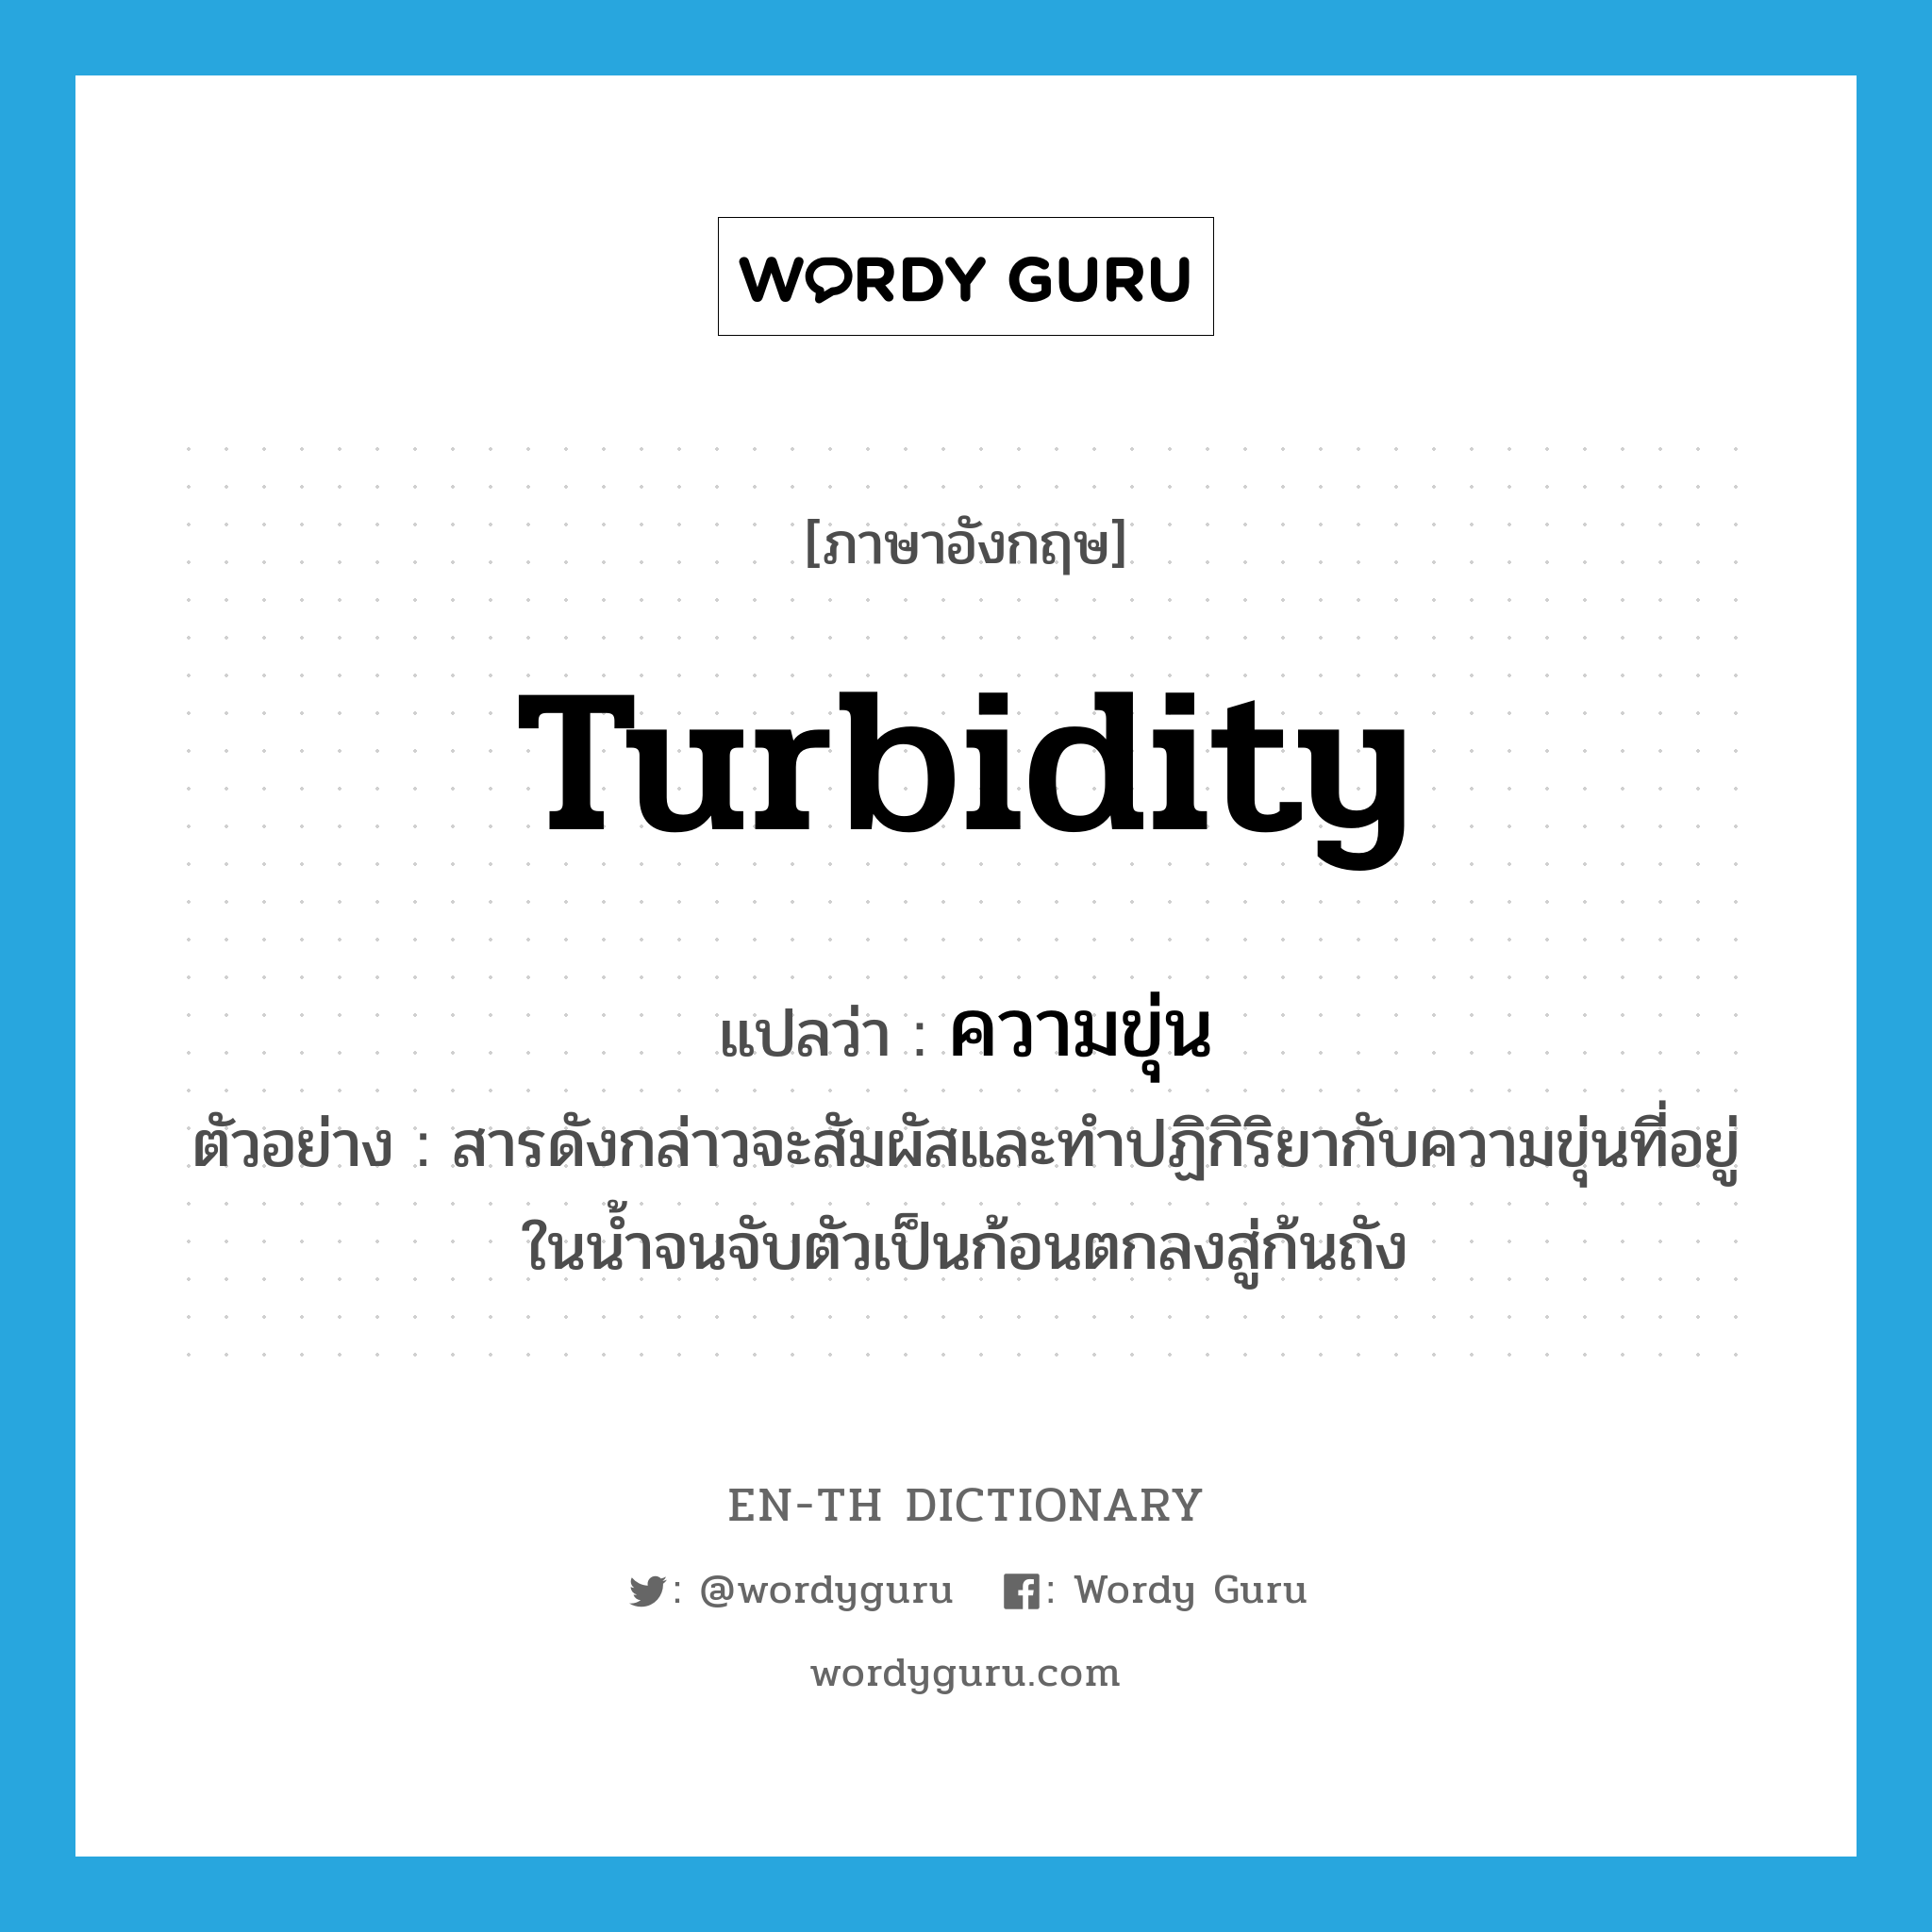 turbidity แปลว่า?, คำศัพท์ภาษาอังกฤษ turbidity แปลว่า ความขุ่น ประเภท N ตัวอย่าง สารดังกล่าวจะสัมผัสและทำปฏิกิริยากับความขุ่นที่อยู่ในน้ำจนจับตัวเป็นก้อนตกลงสู่ก้นถัง หมวด N